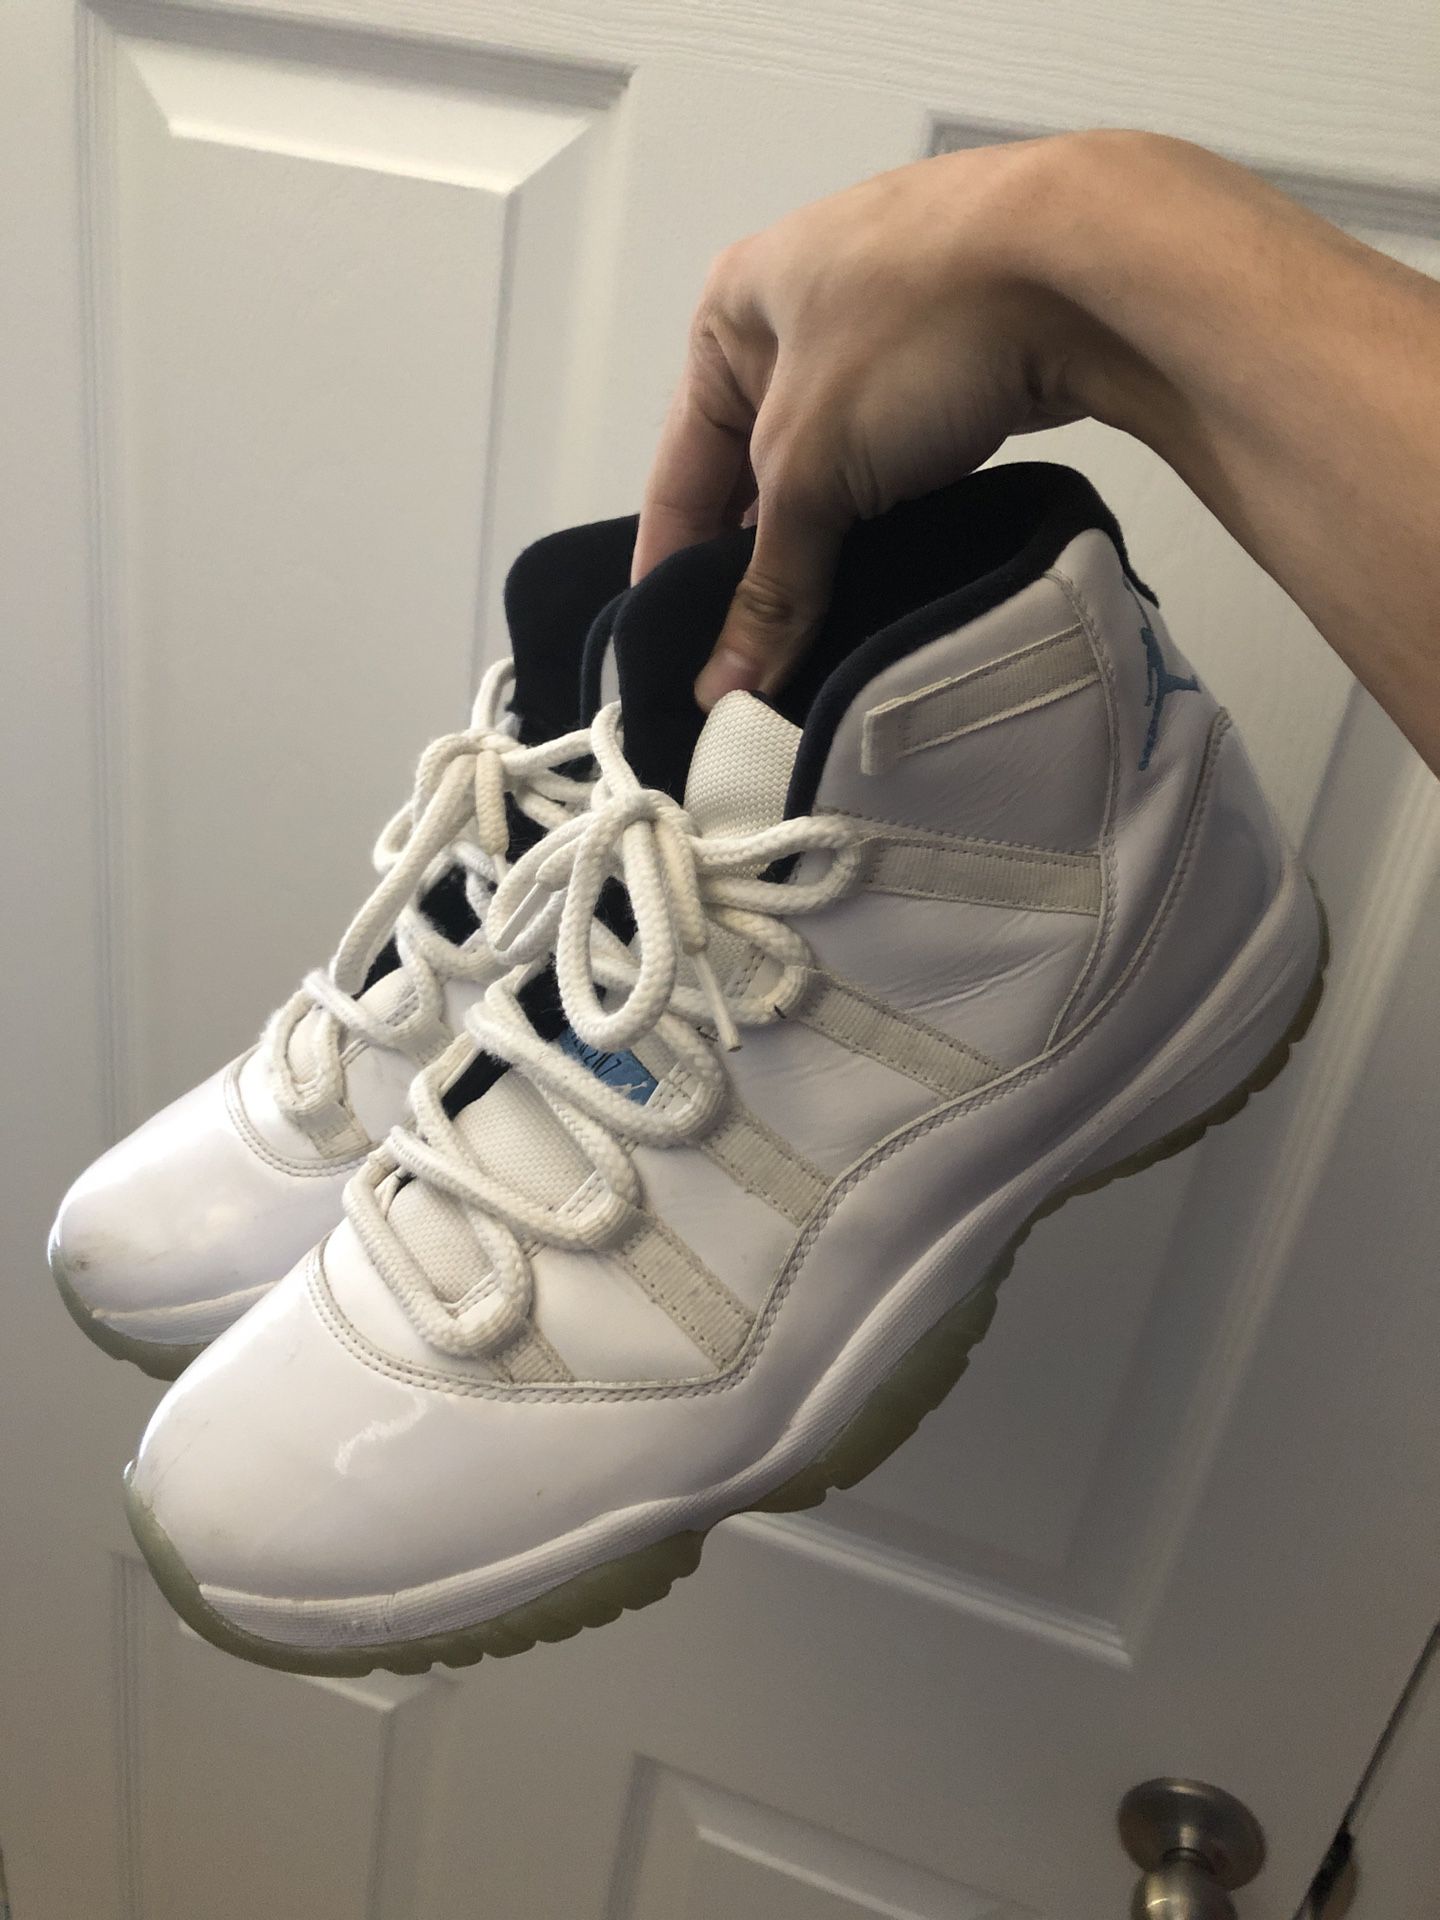 Jordan 11 Legend Blue Size 10.5 Retro Nike